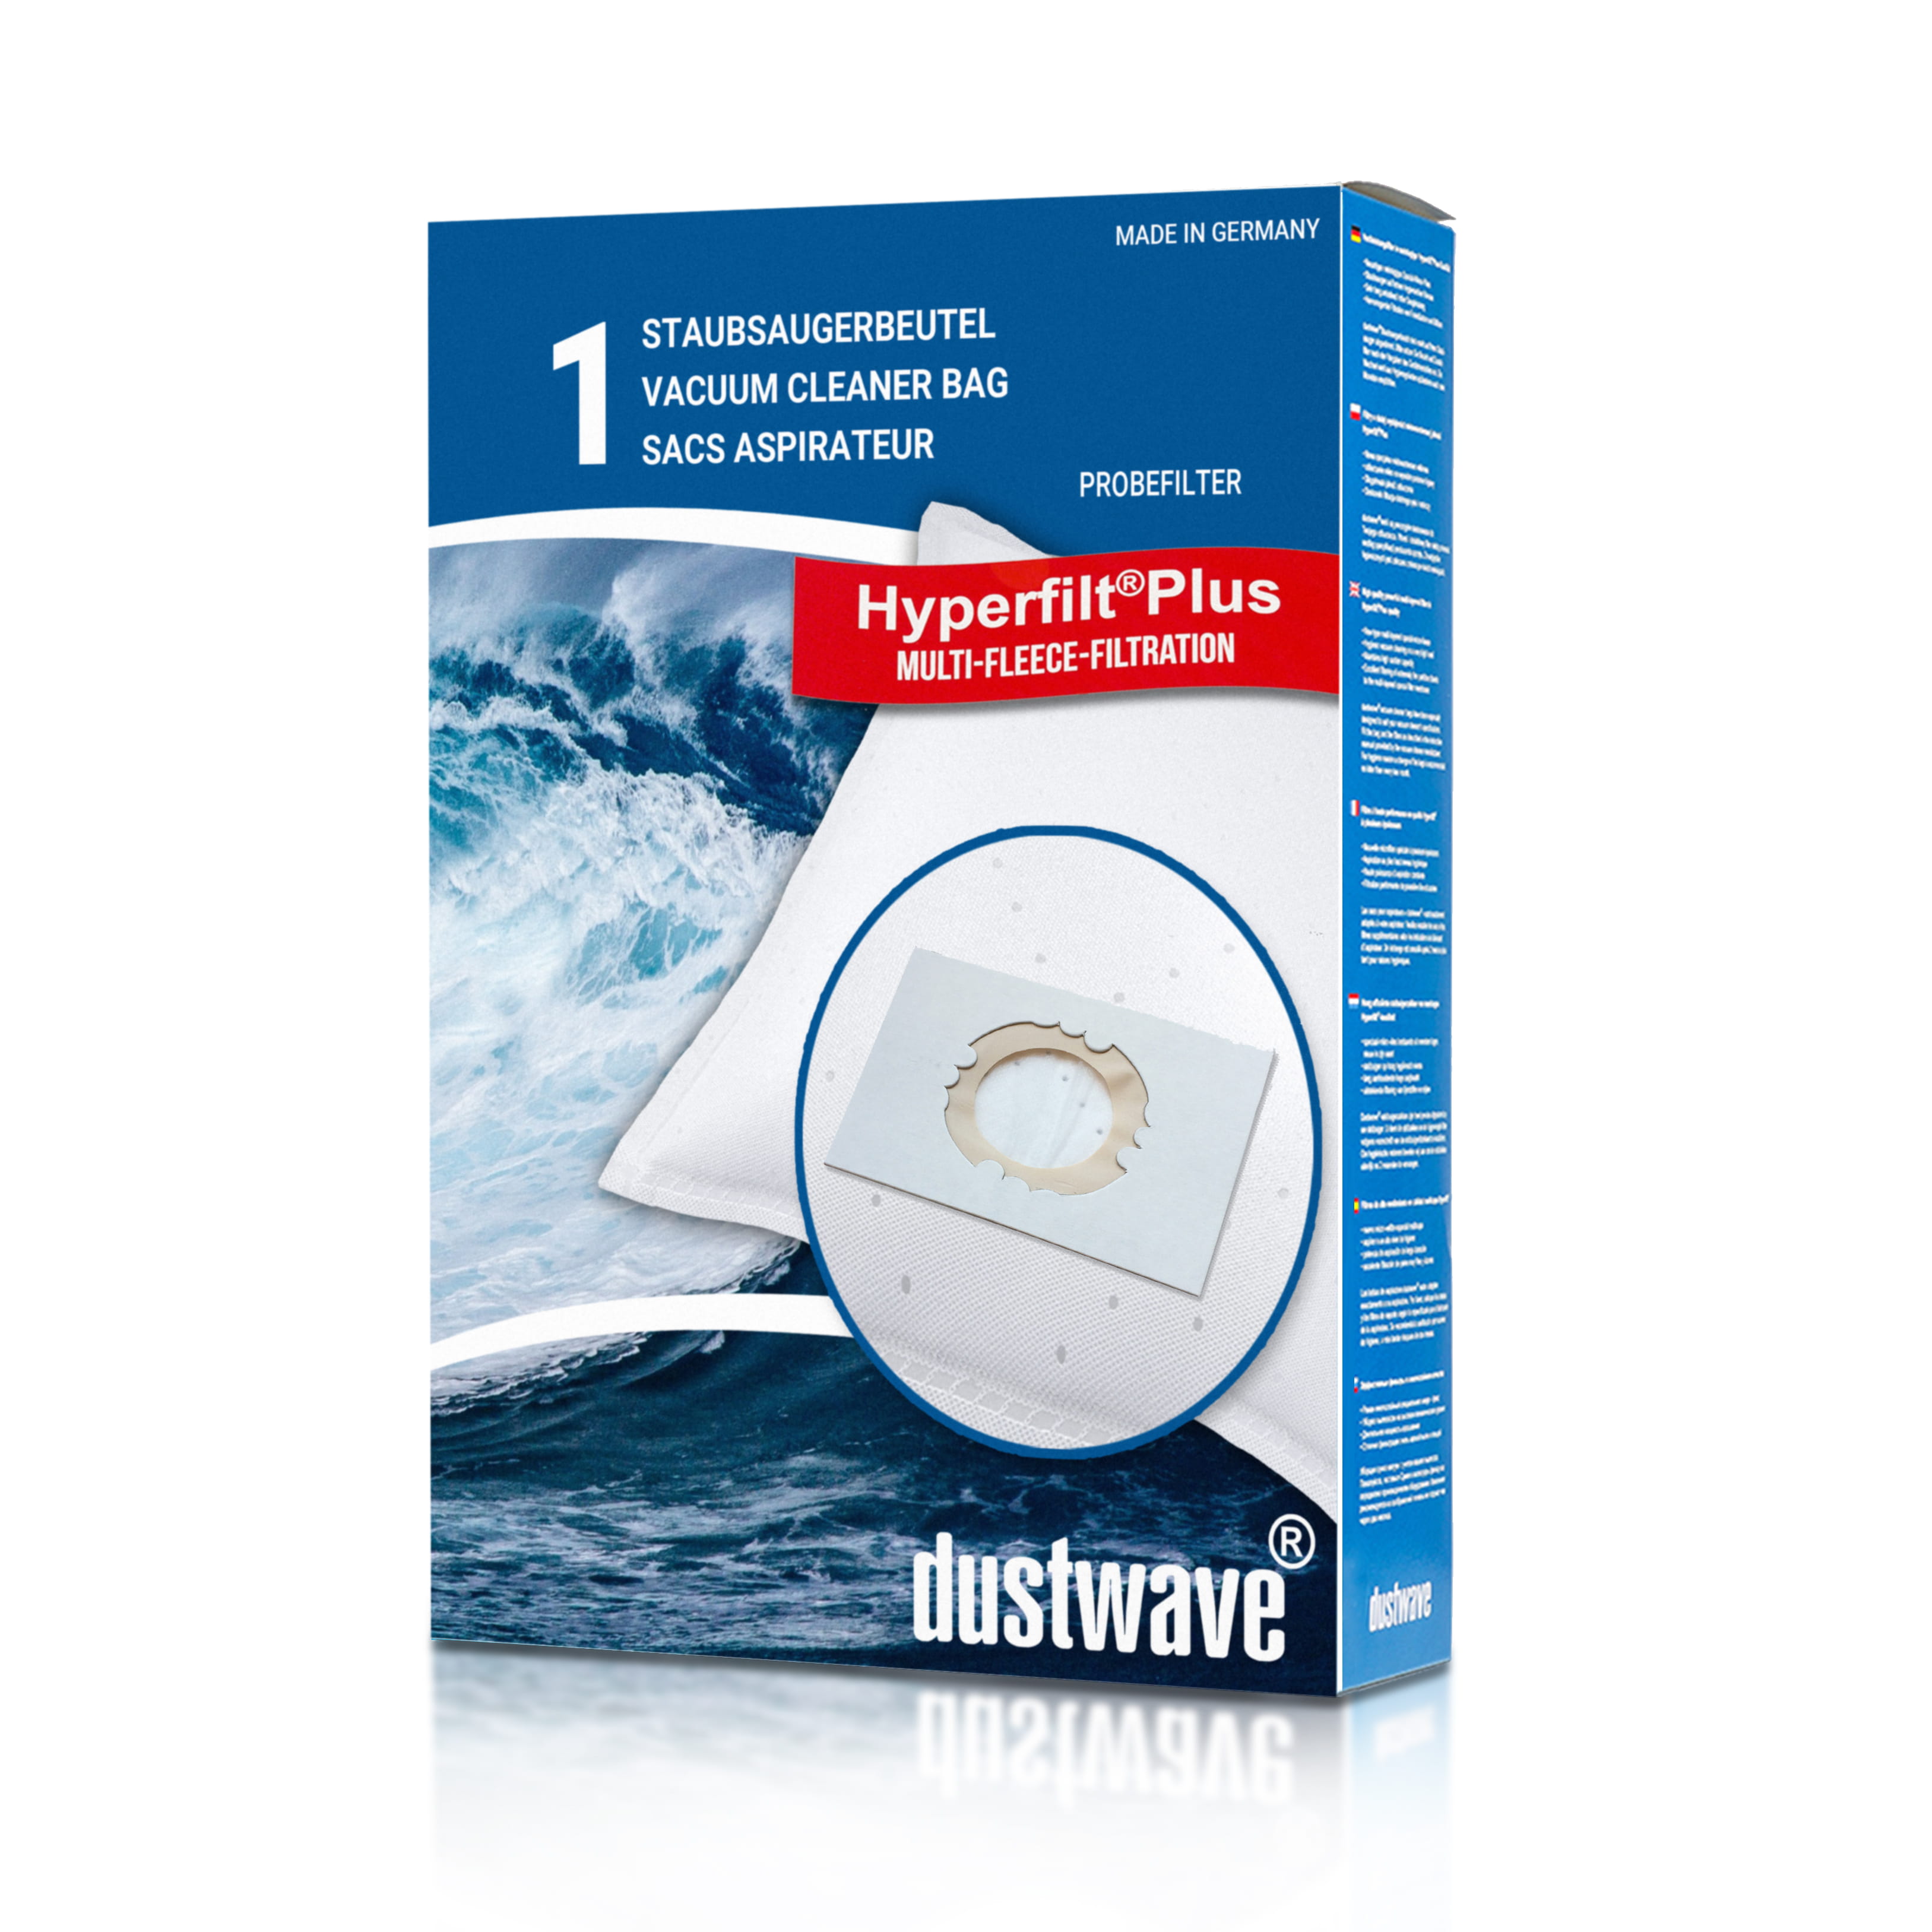 1x dustwave® Premium Staubsaugerbeutel passend für Einhell 23.511.70 (30 L) / Markenfiltersäcke (ca. 30 Liter) - Made in Germany